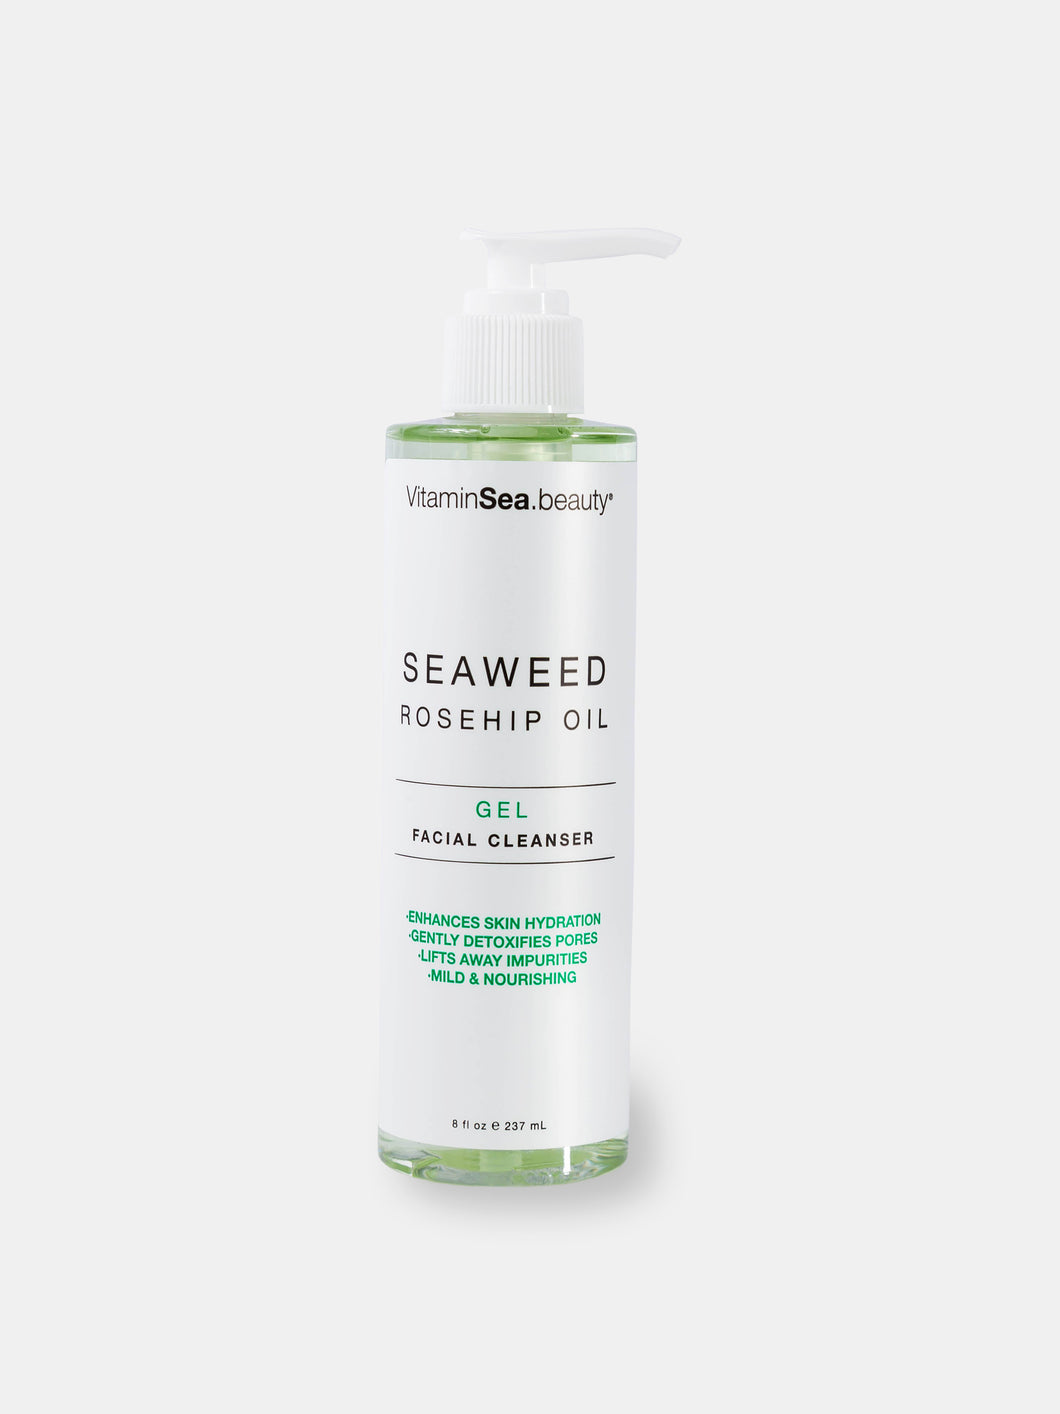 Seaweed & Rosehip Oil Gel Facial Cleanser